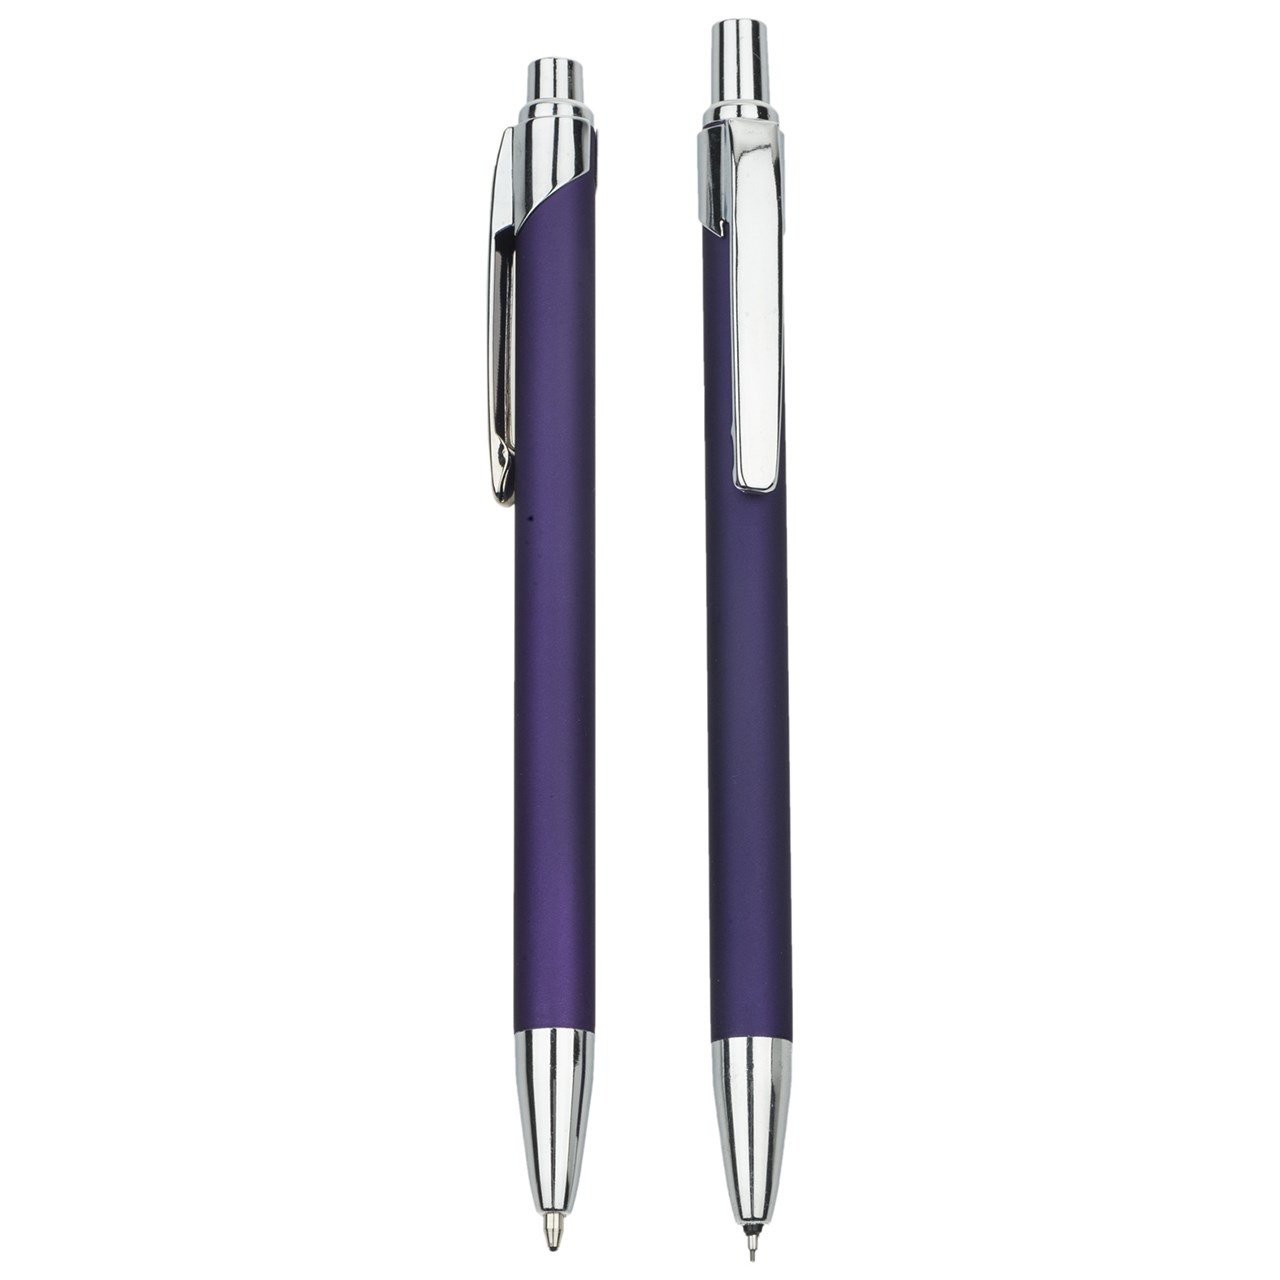 ست خودکار و مداد نوکی پاپکو مدل PX-006